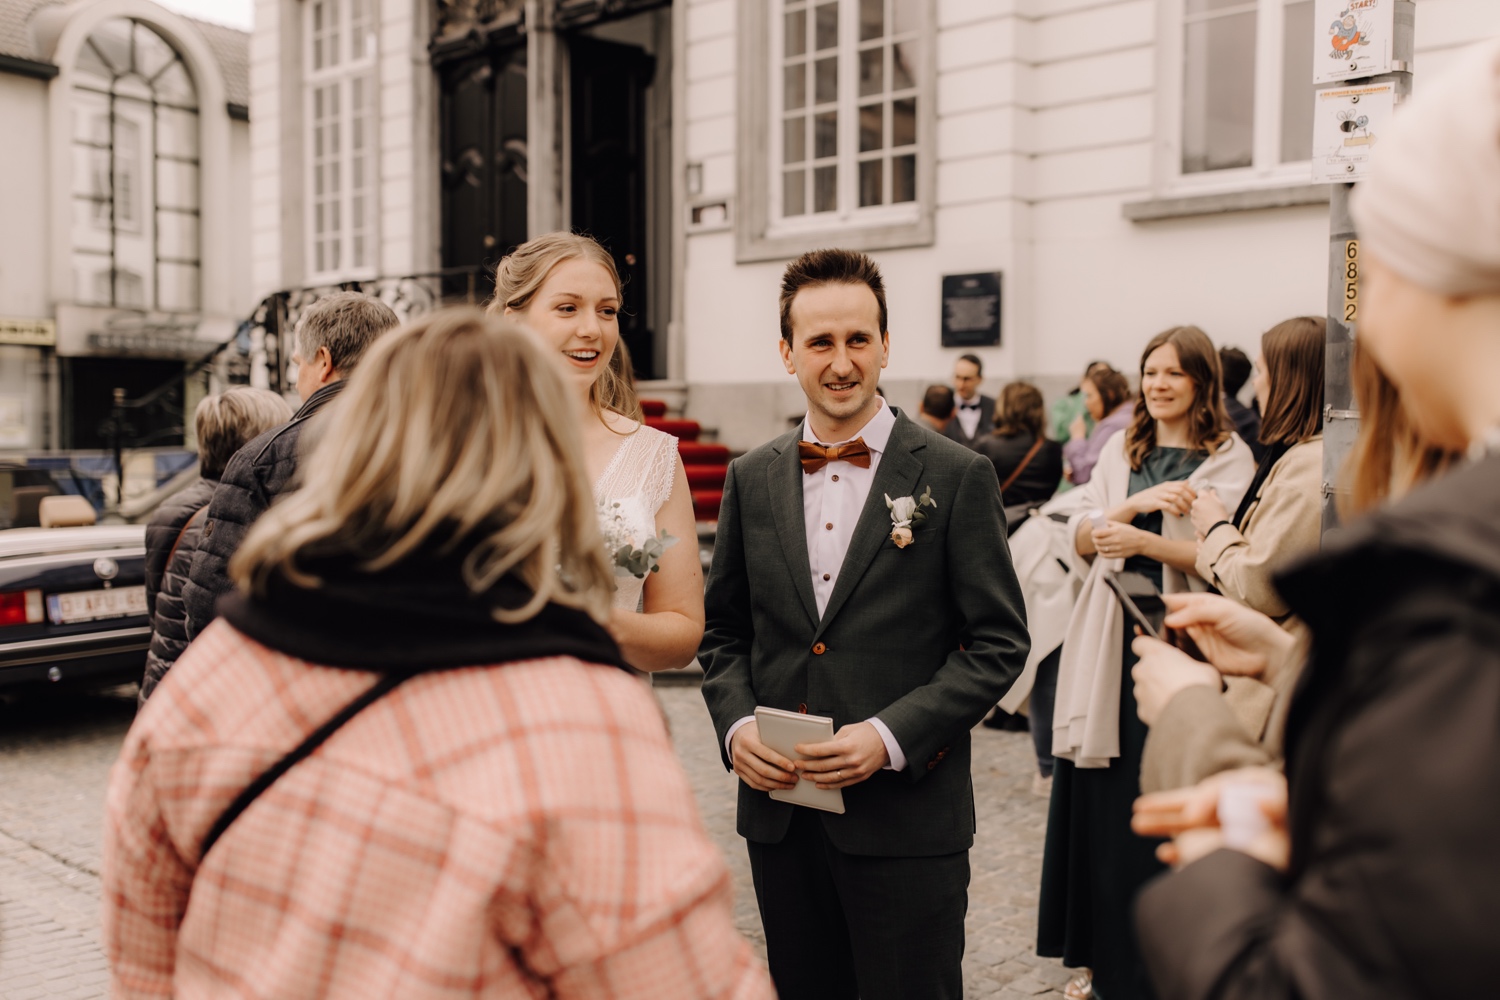 Huwelijksfotograaf Limburg - bruidspaar groet gasten aan het gemeentehuis